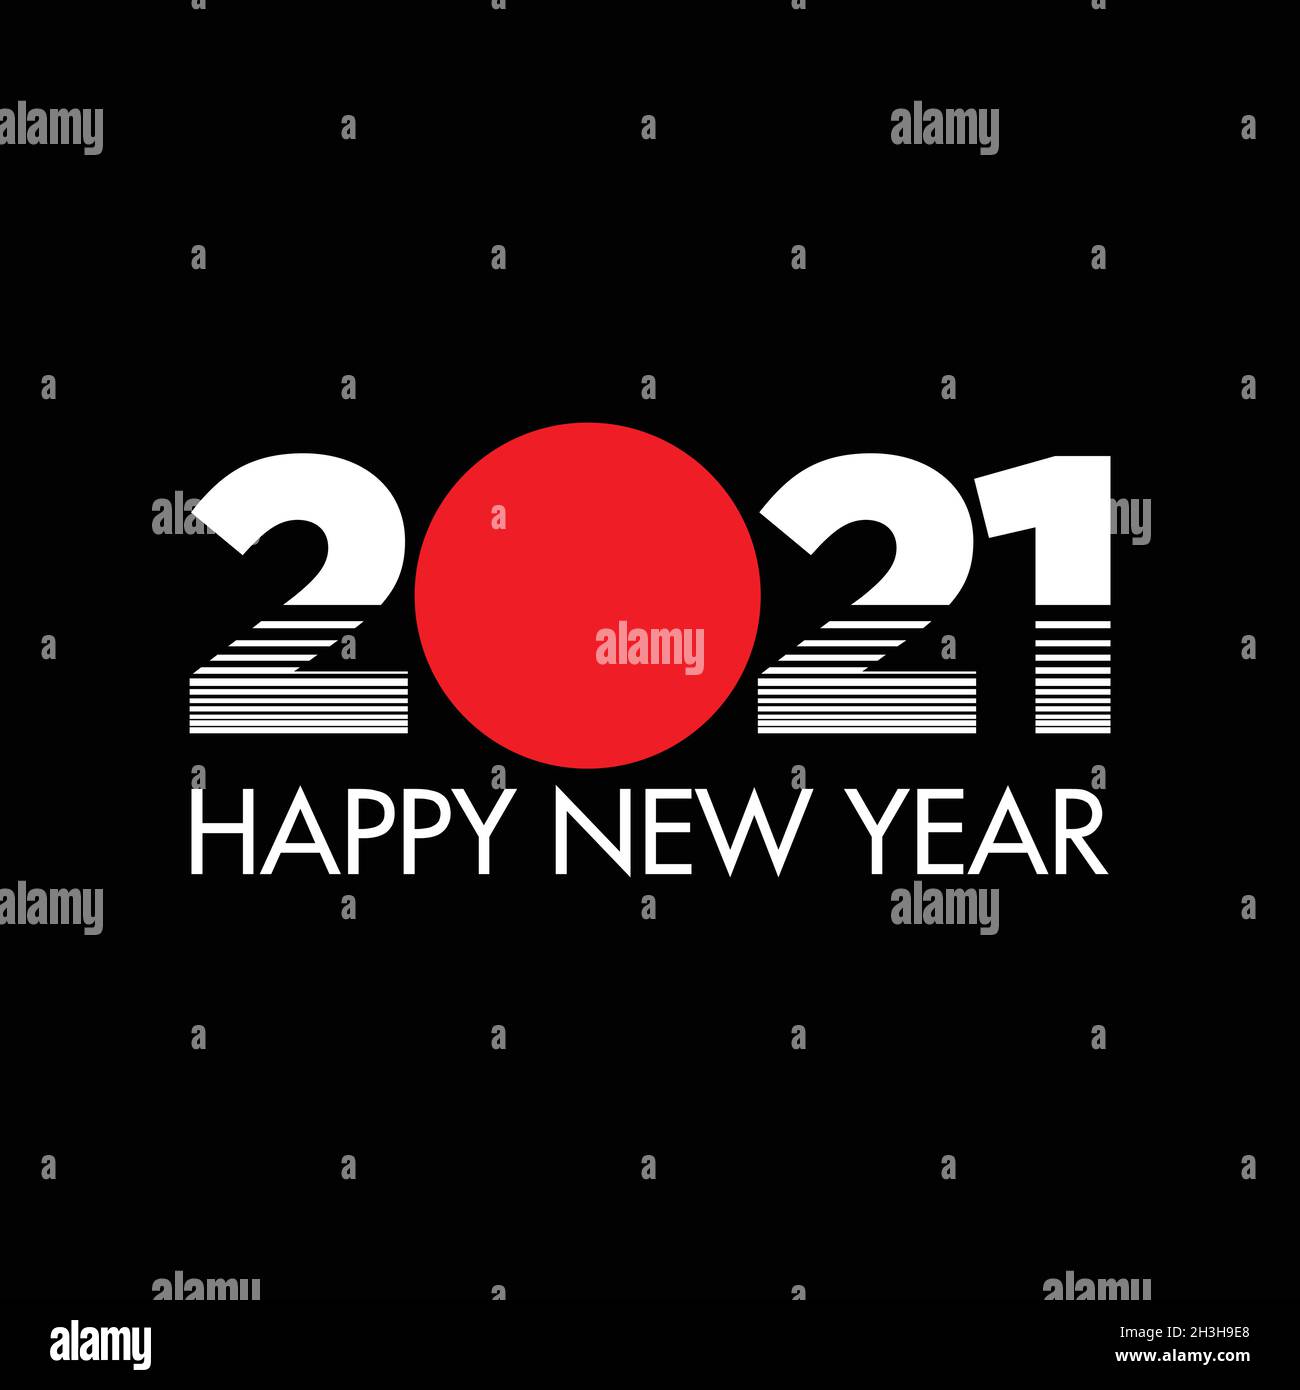 Bonne année 2021 style tokyo sur fond noir. Modèle d'illustration d'arrière-plan vectoriel du nouvel an 2021. Illustration vectorielle EPS.8 EPS.10 Illustration de Vecteur